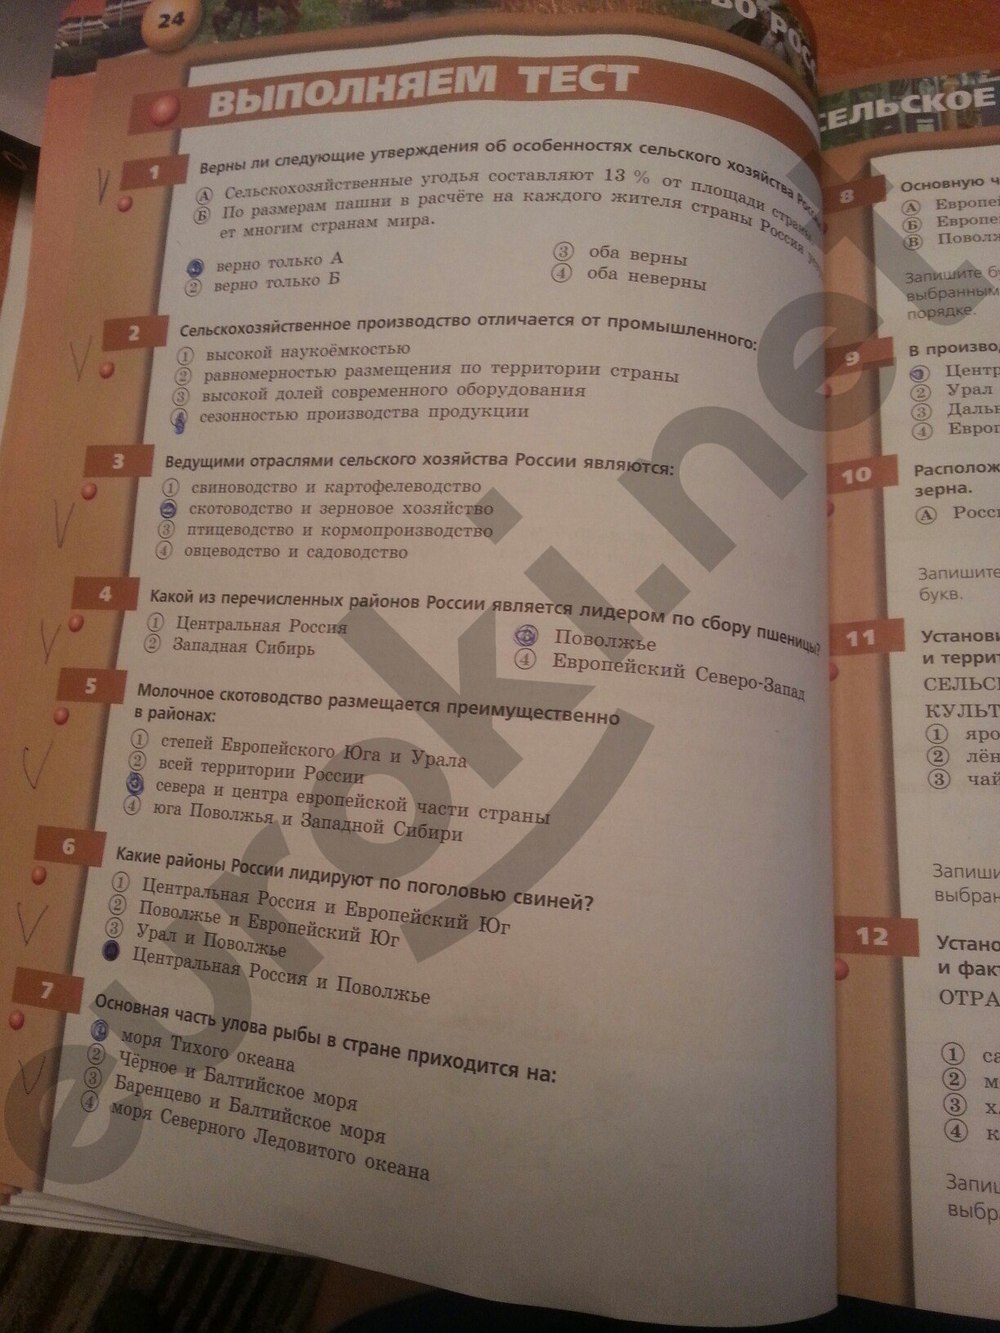 гдз 9 класс тетрадь-тренажер страница 24 география Ходова, Ольховая